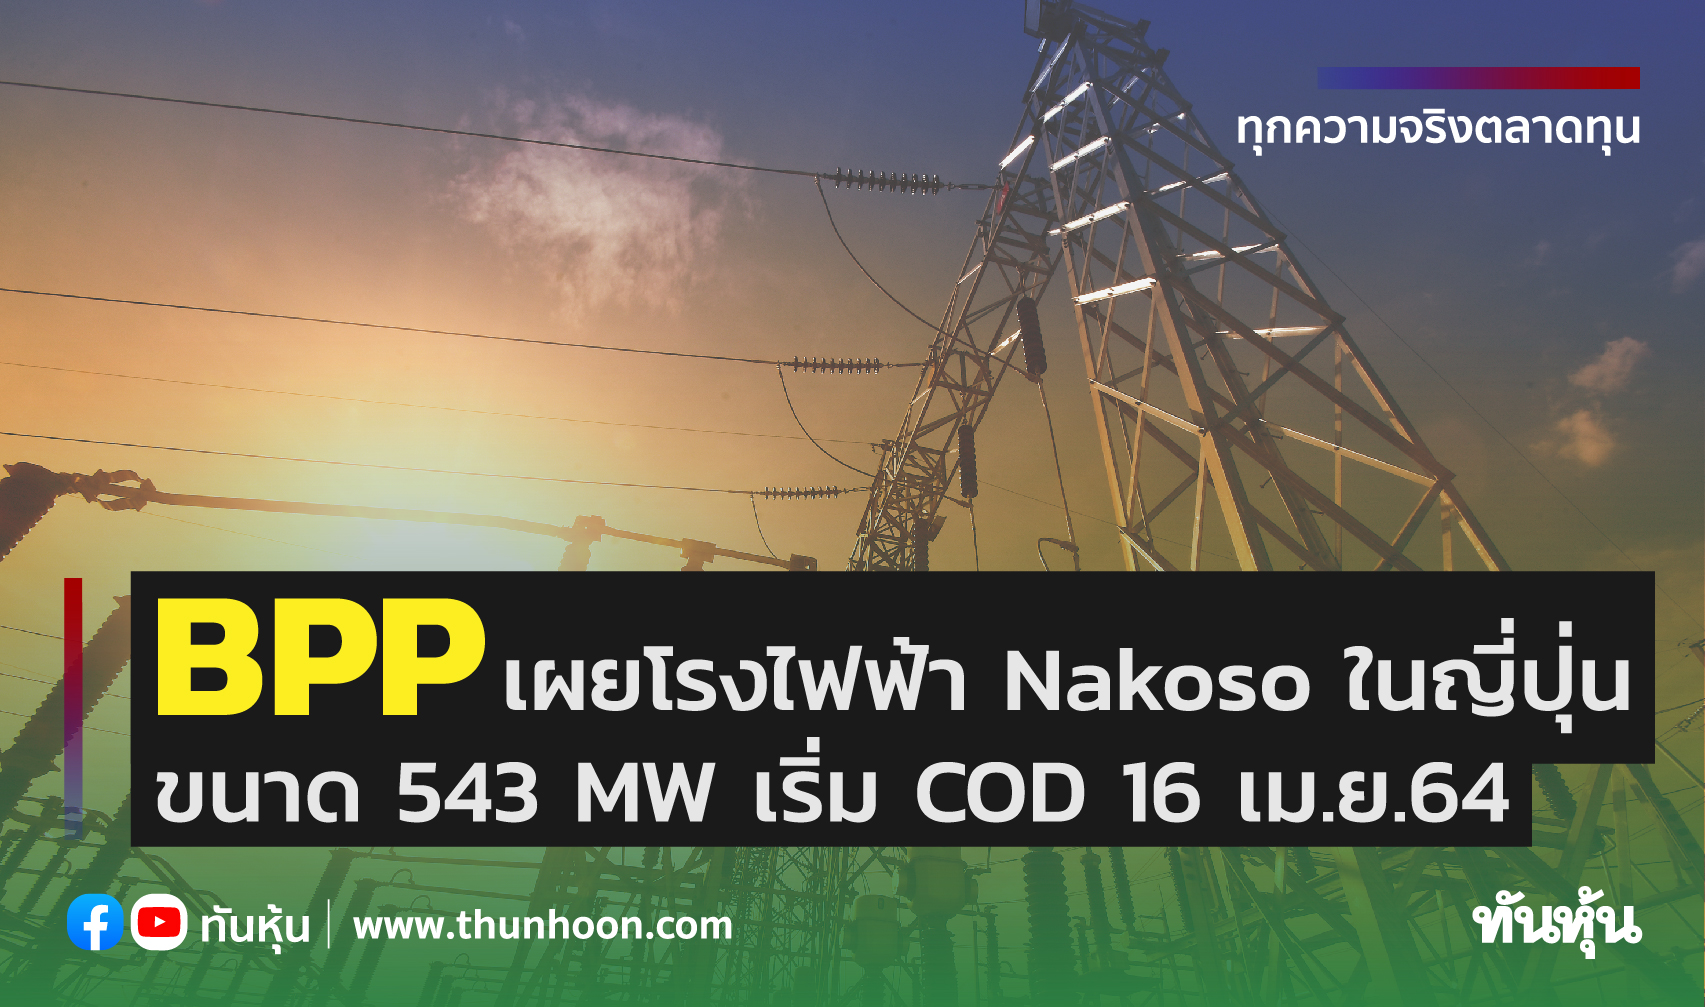 BPP เผยโรงไฟฟ้า Nakoso ในญี่ปุ่นขนาด 543 MW เริ่ม COD 16 เม.ย.64